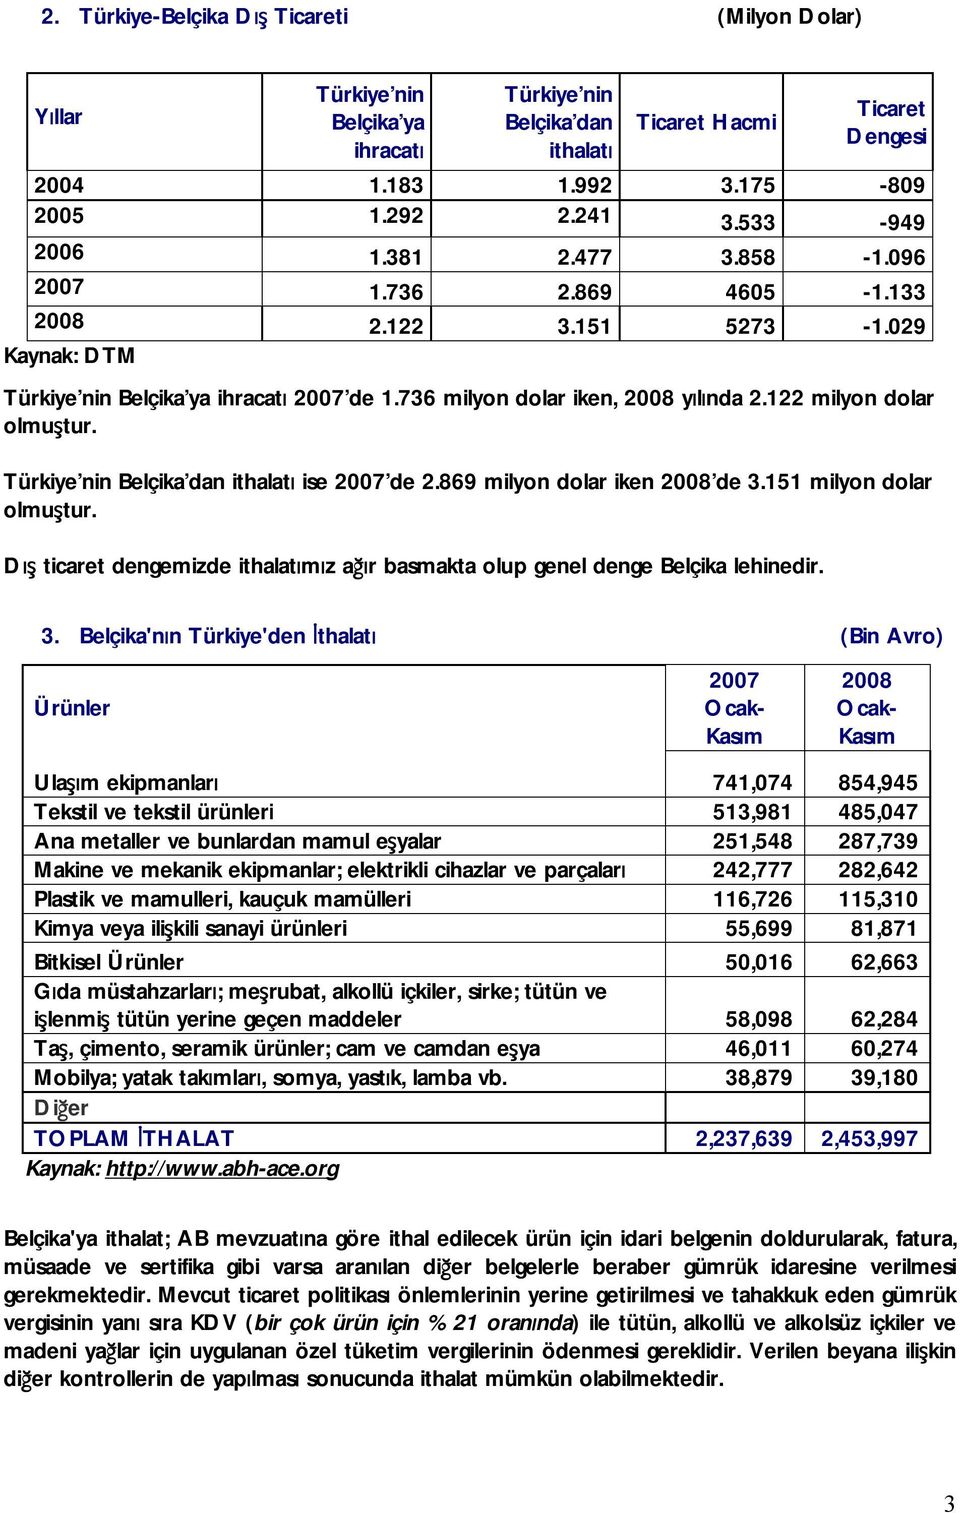 122 milyon dolar olmuştur. Türkiye nin Belçika dan ithalatı ise 2007 de 2.869 milyon dolar iken 2008 de 3.151 milyon dolar olmuştur.